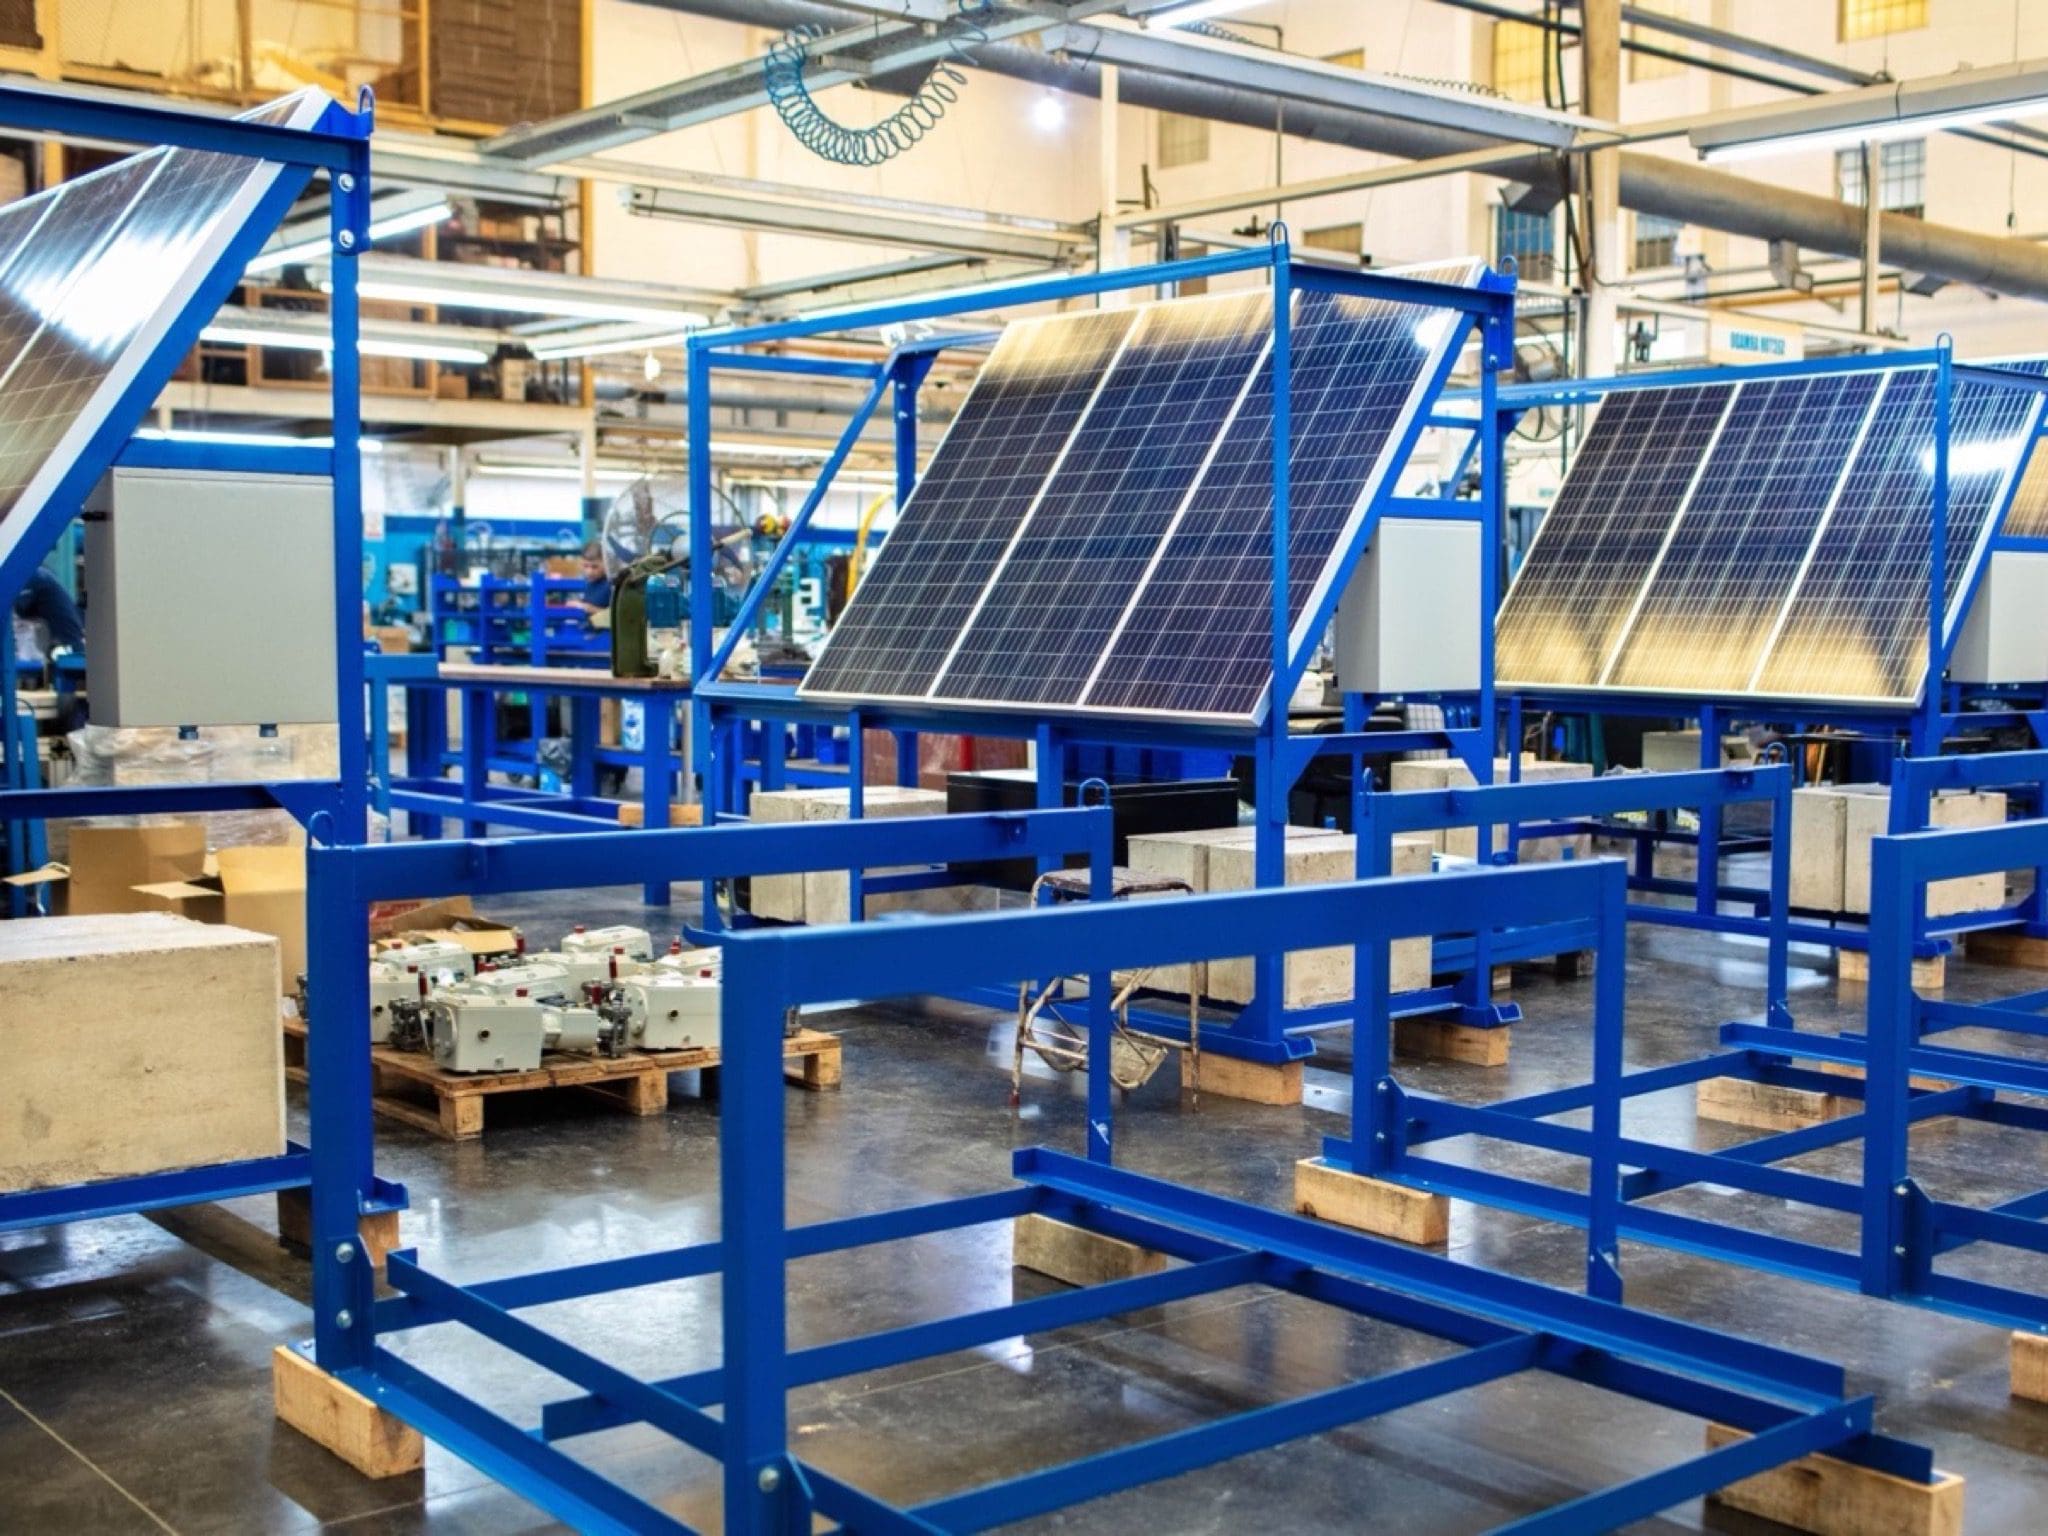 solar panel production 2400x1600 39 1 copy - Alegerea panourilor fotovoltaice potrivite, crucială în obținerea unei energii curate la cost competitiv